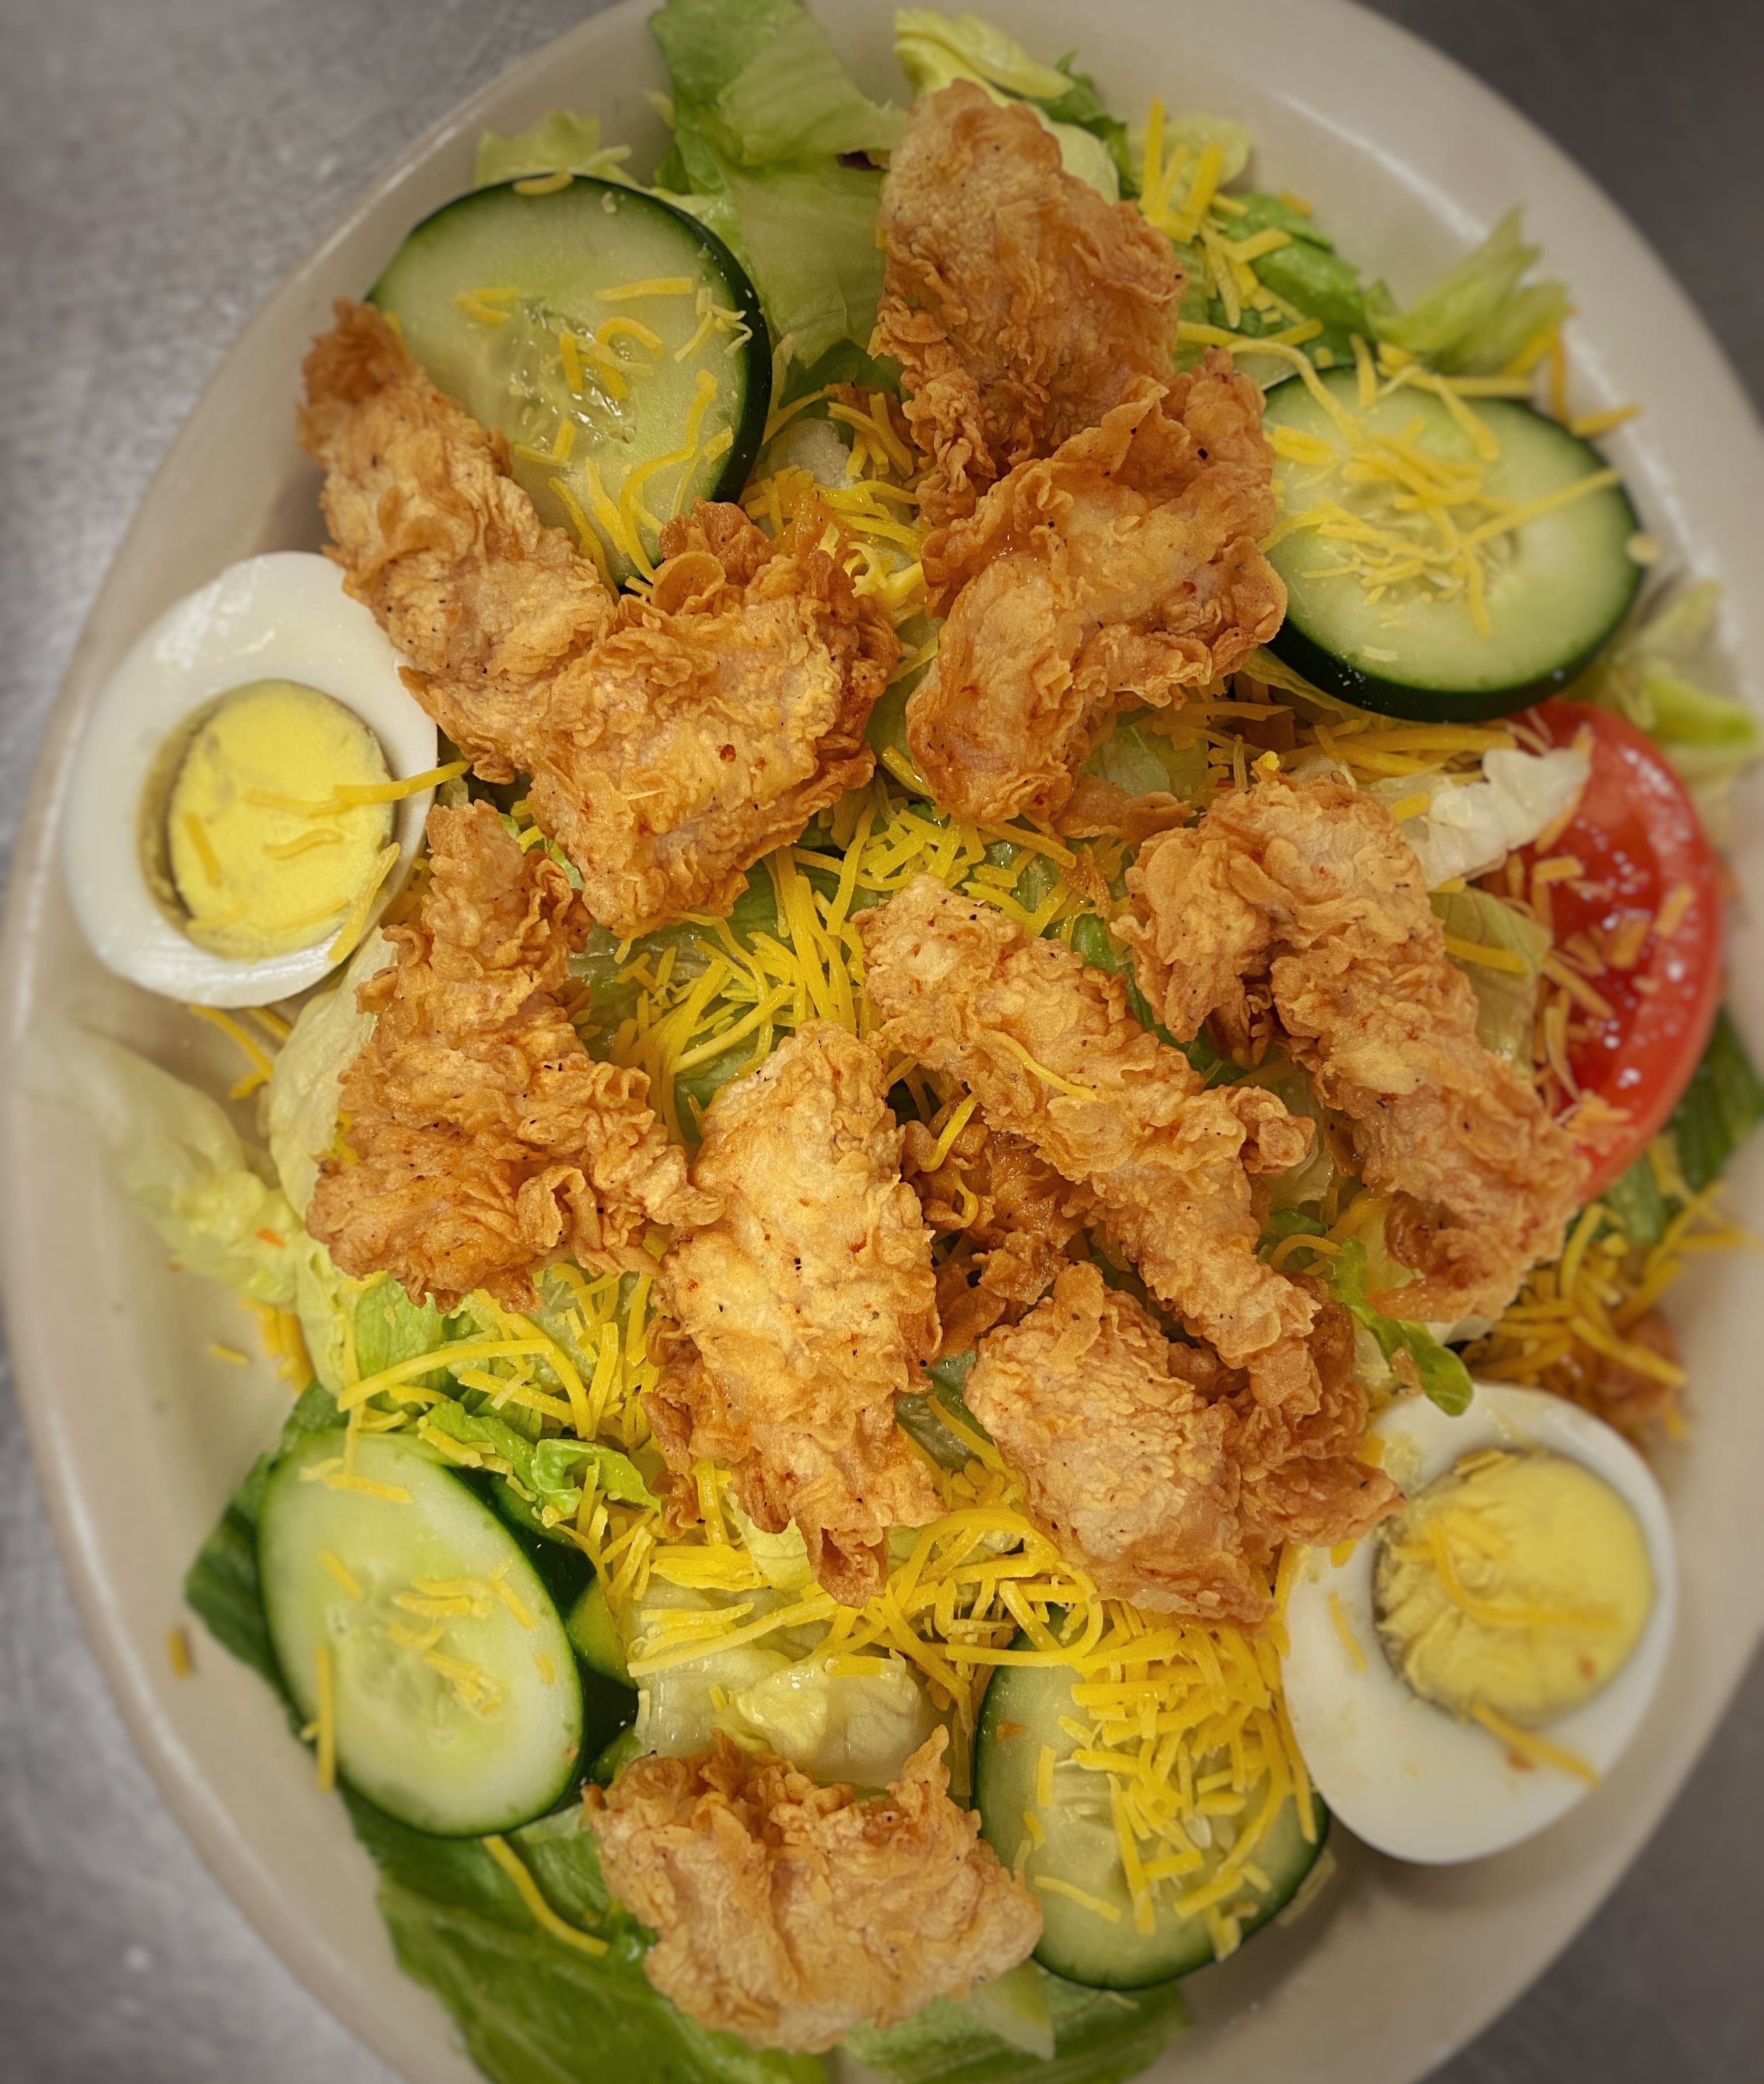 Grilled or Crispy Chicken Salad